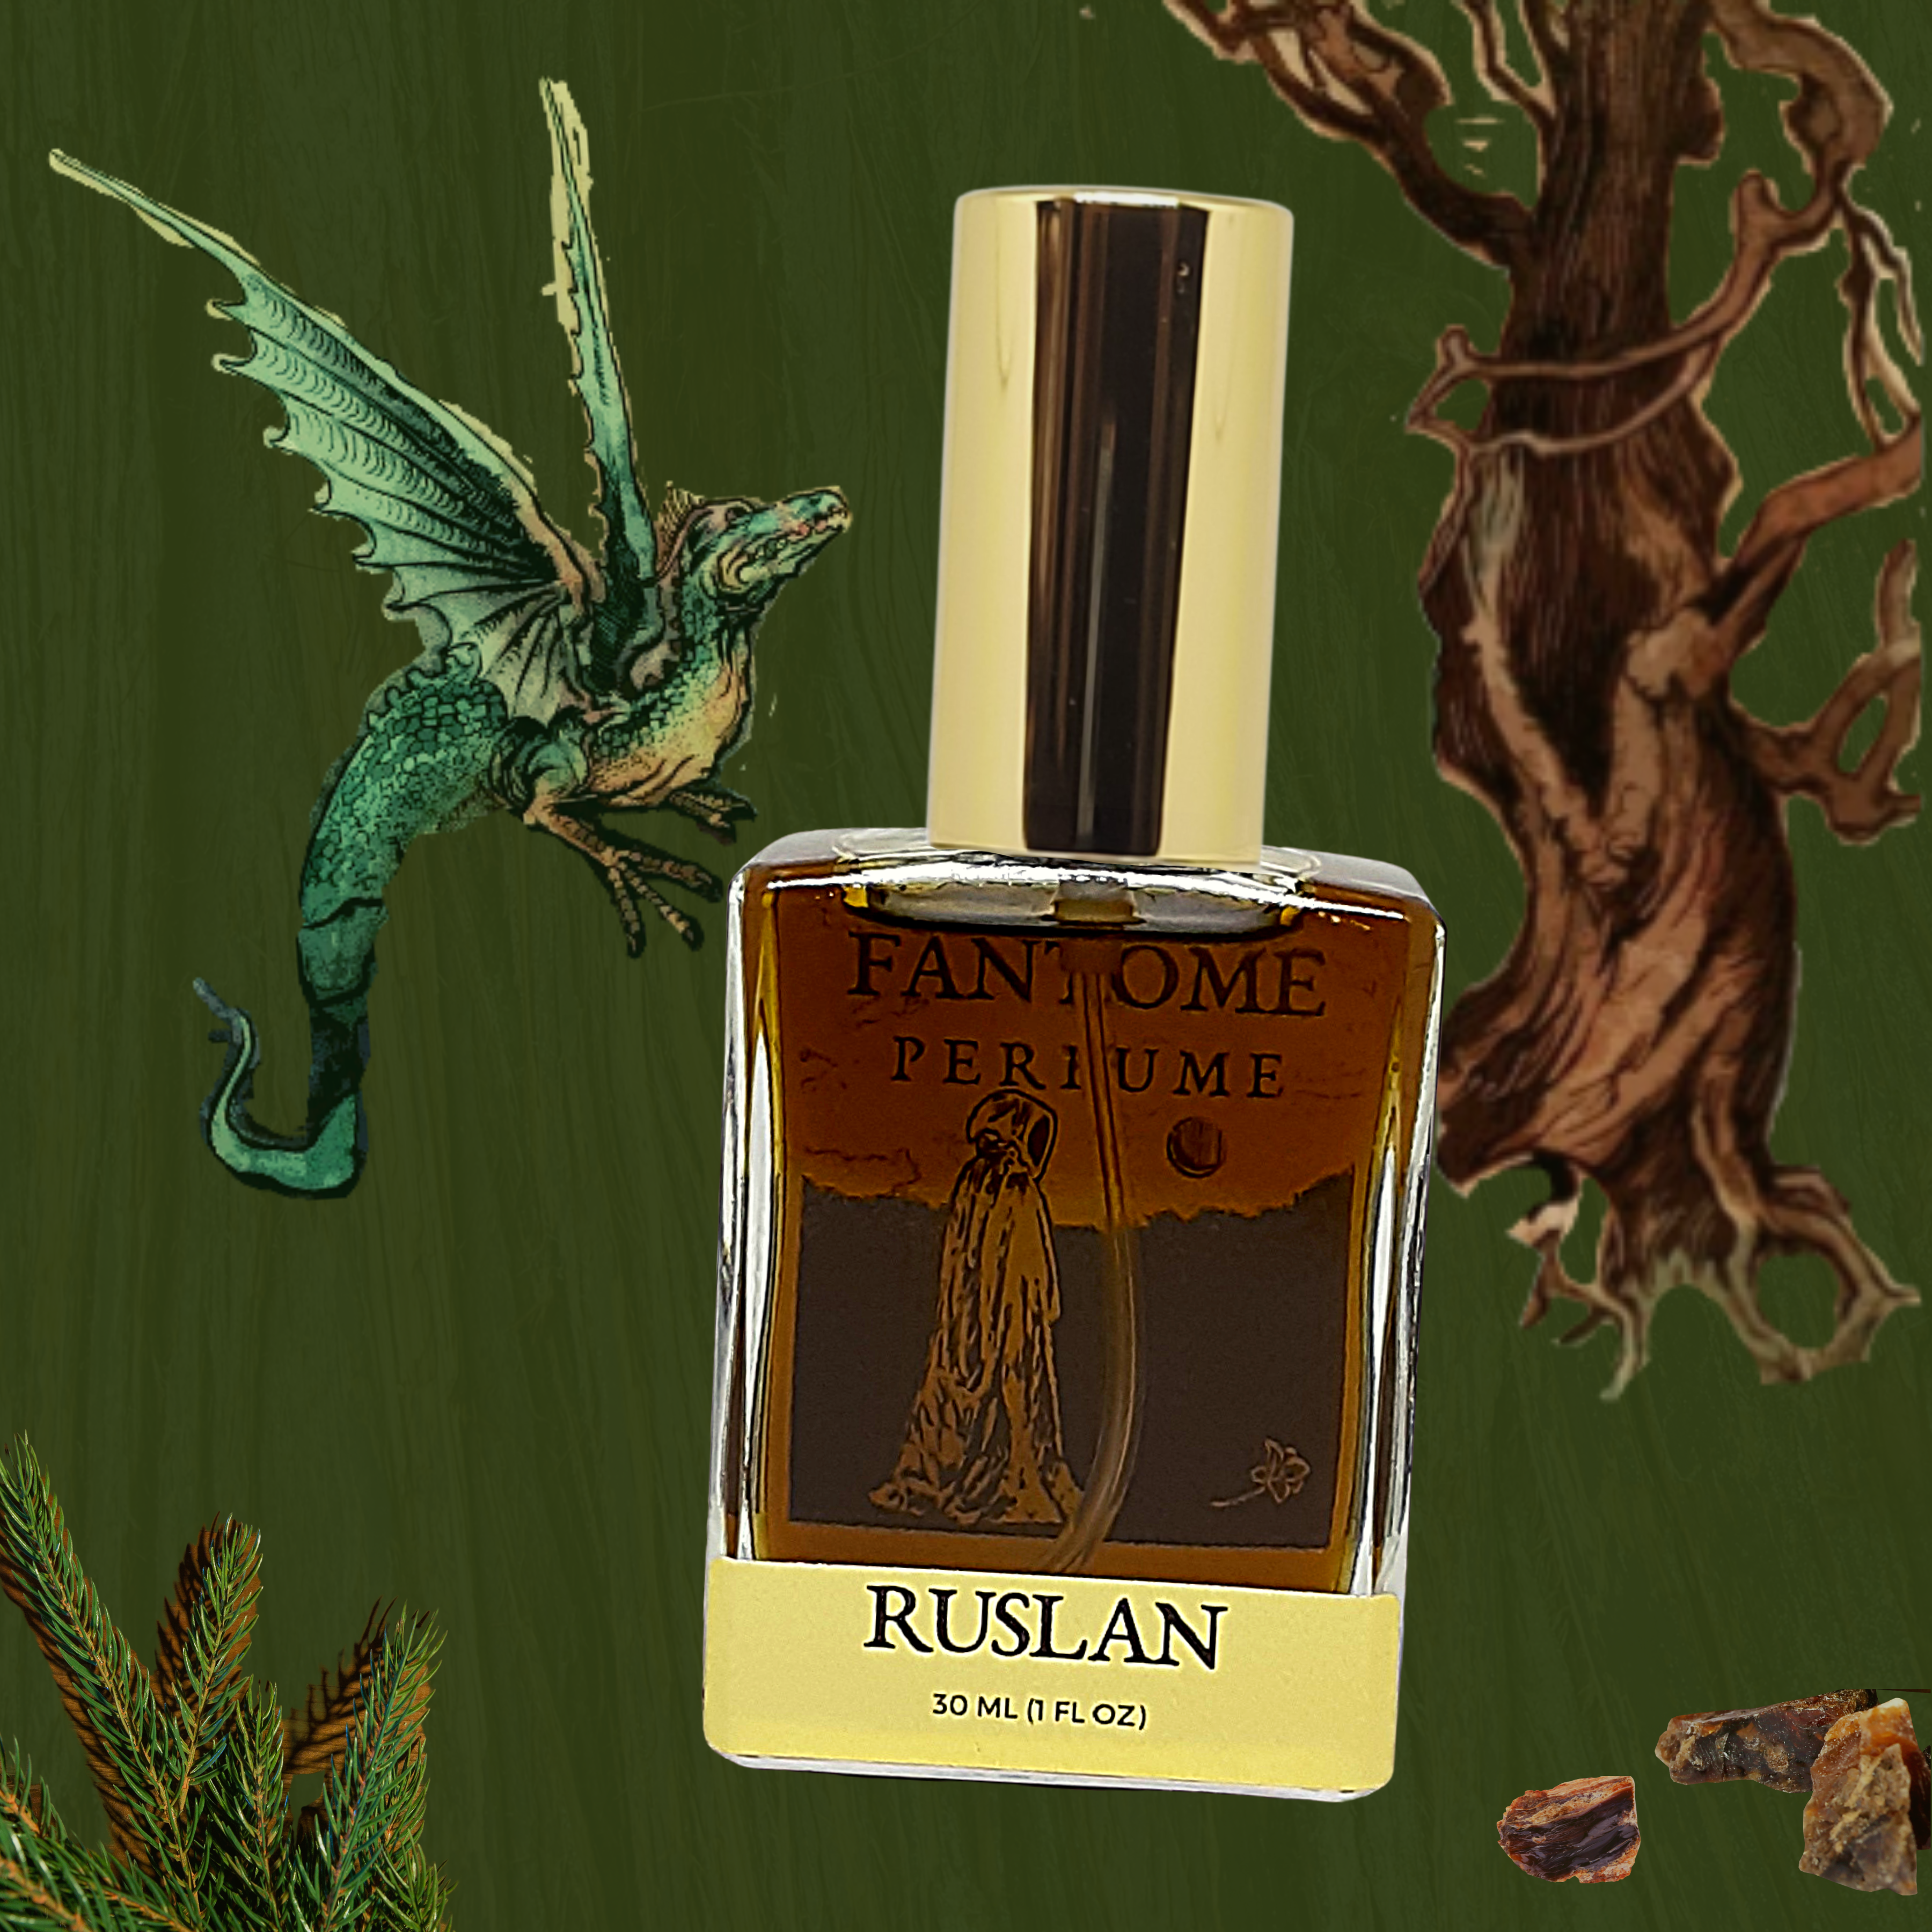 økse Forbandet Virksomhedsbeskrivelse Ruslan - Perfume Eau de Parfum by Fantôme